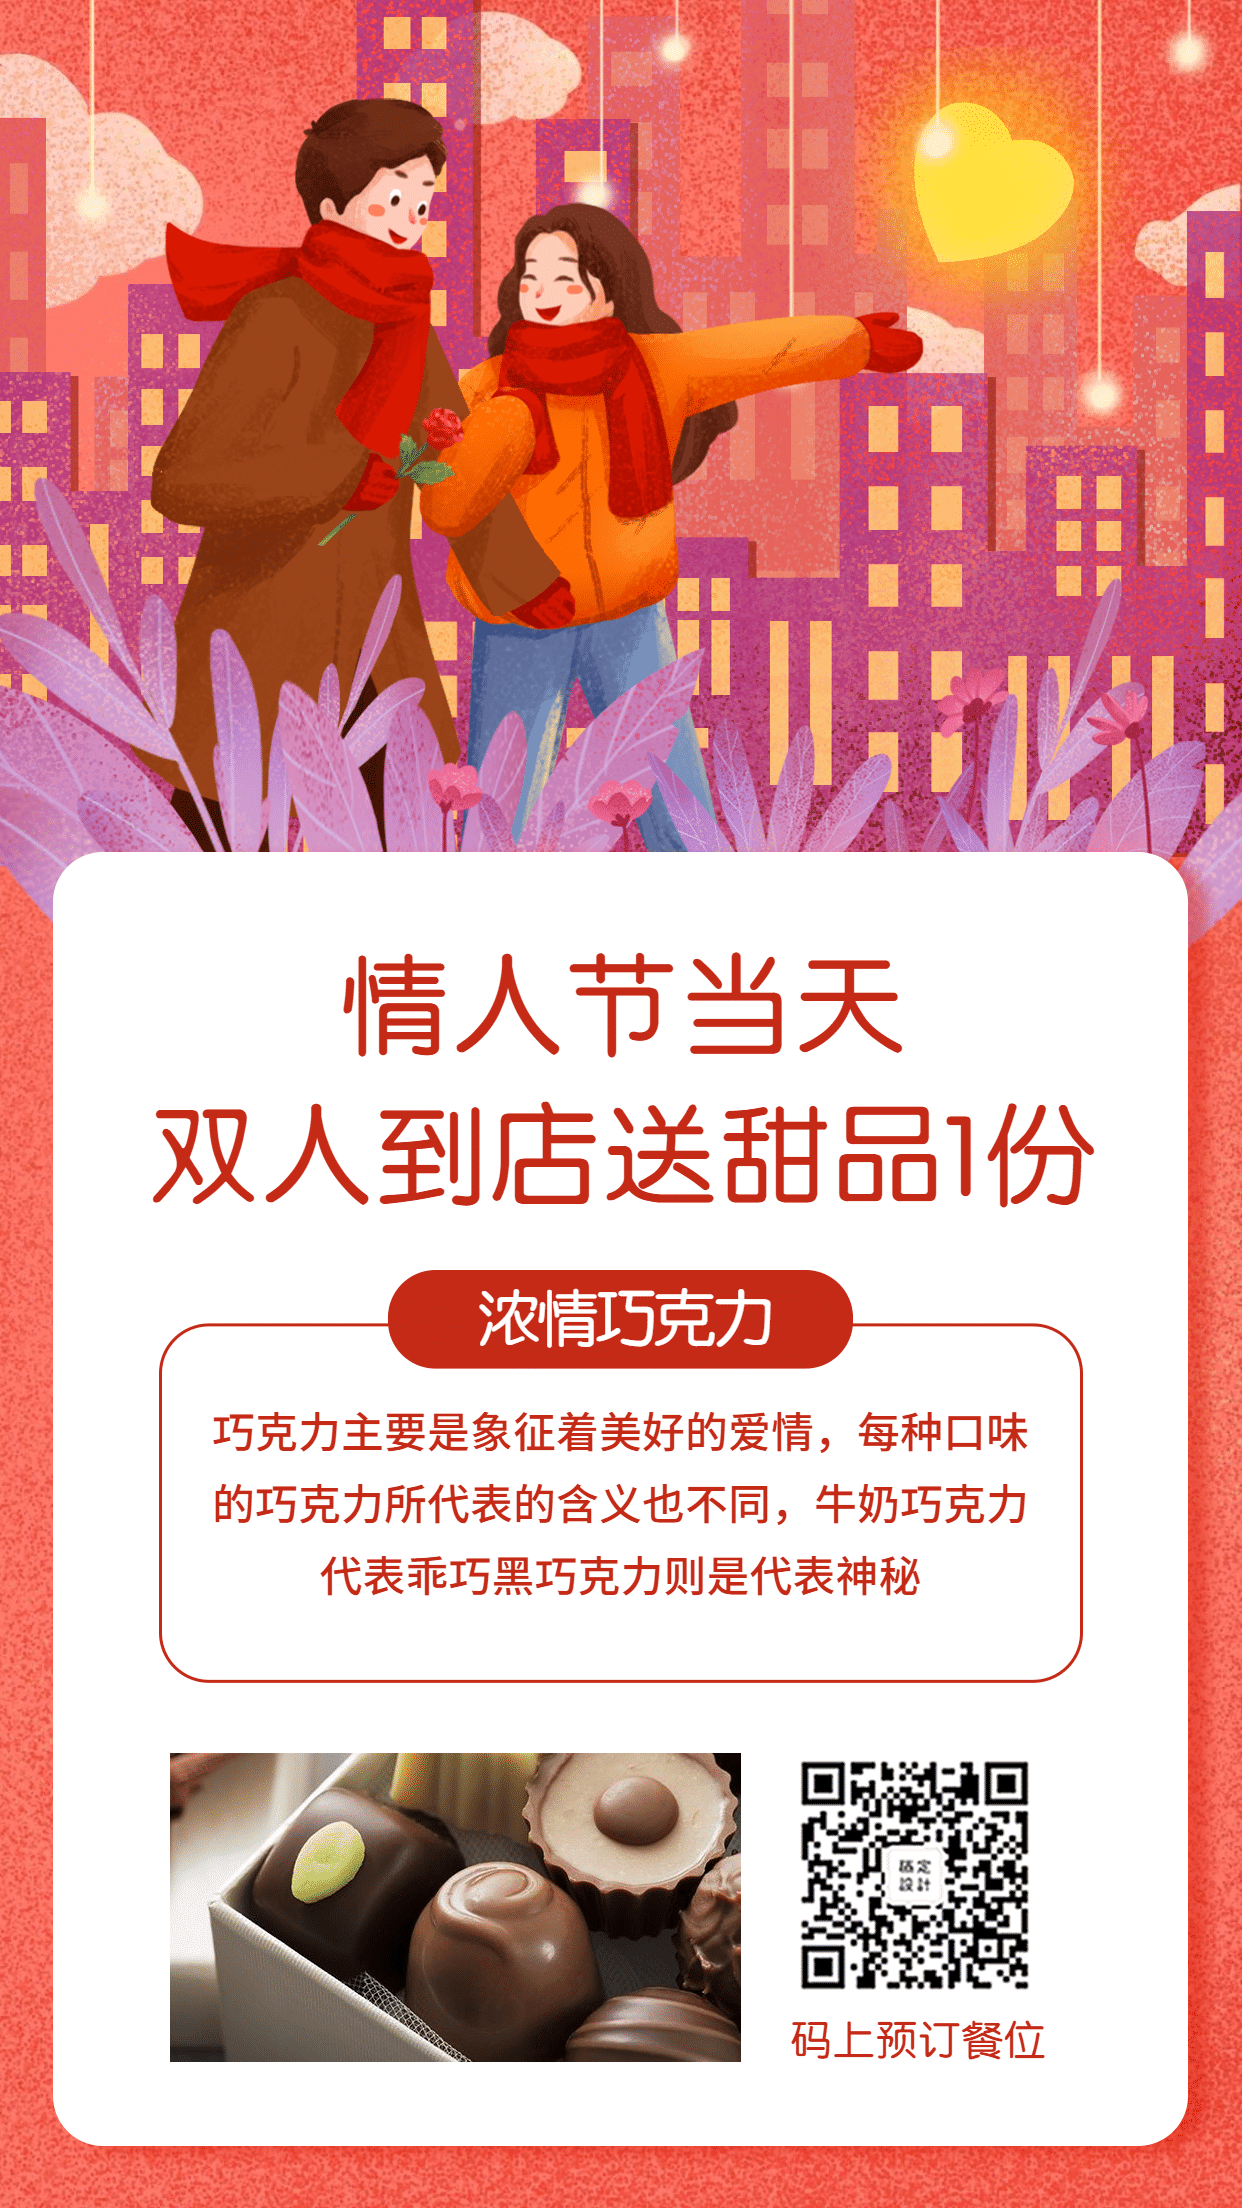 餐饮七夕情人节促销活动手机海报预览效果